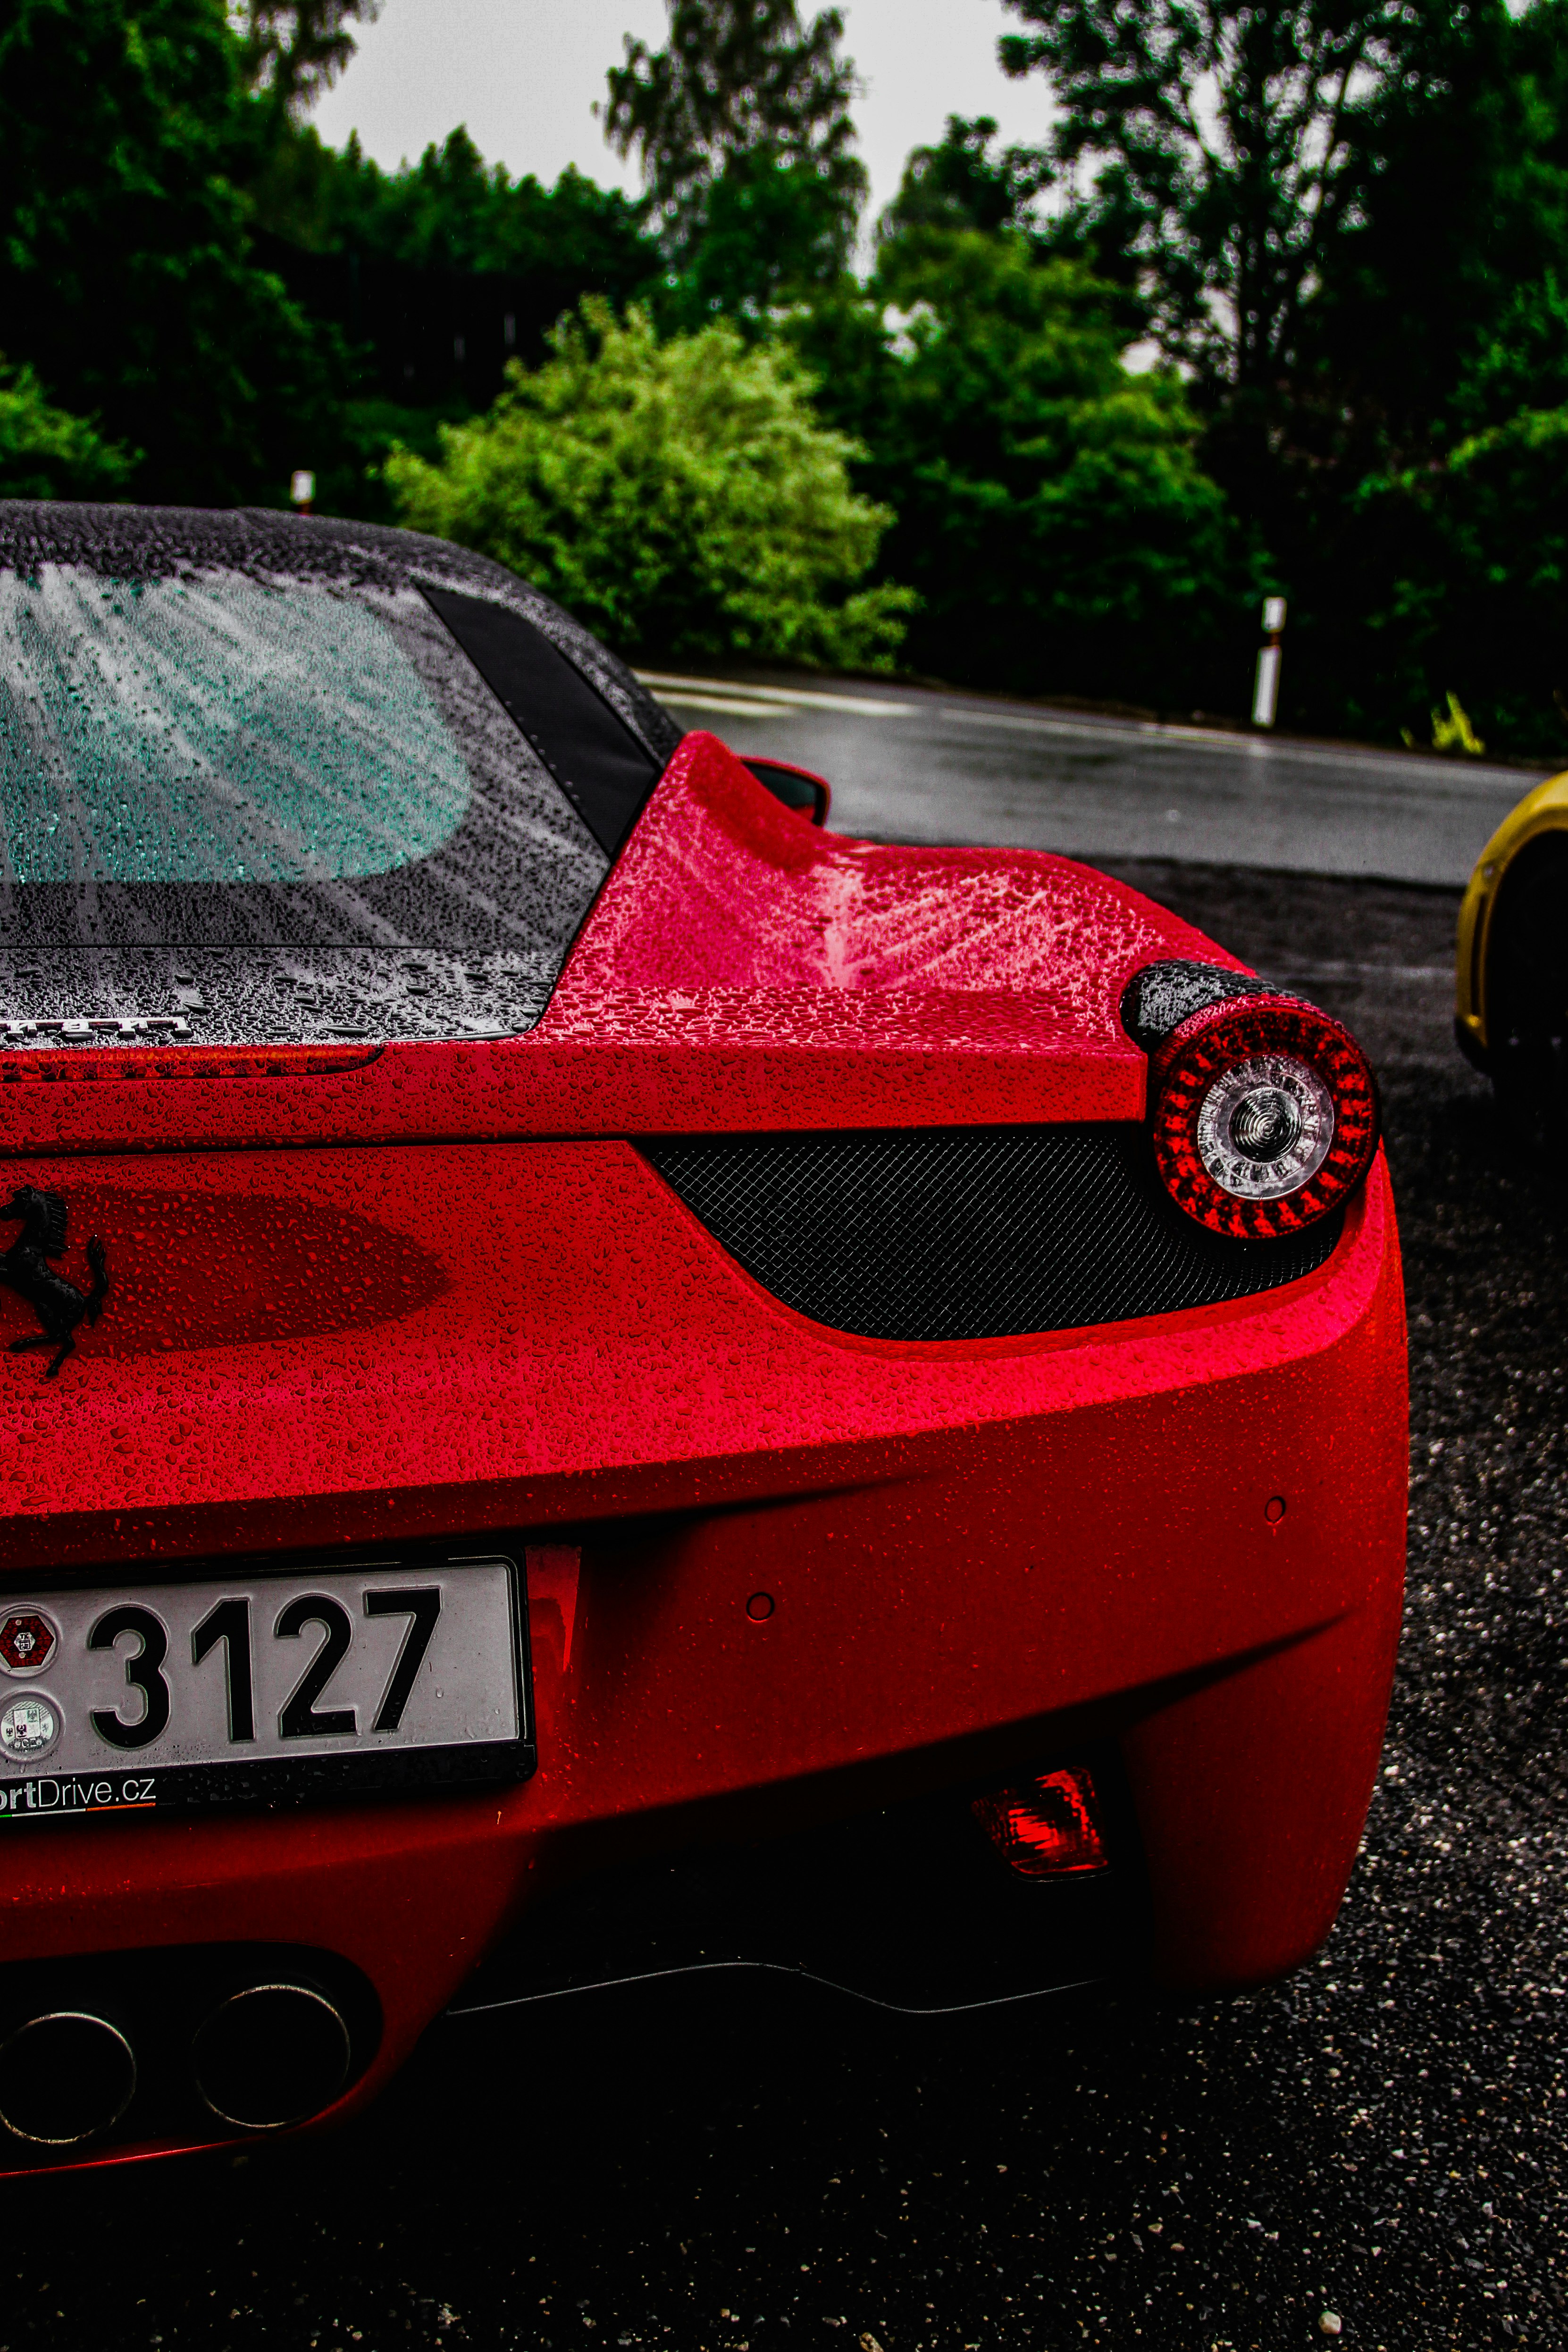 red Ferrari near asphalt road during daytime